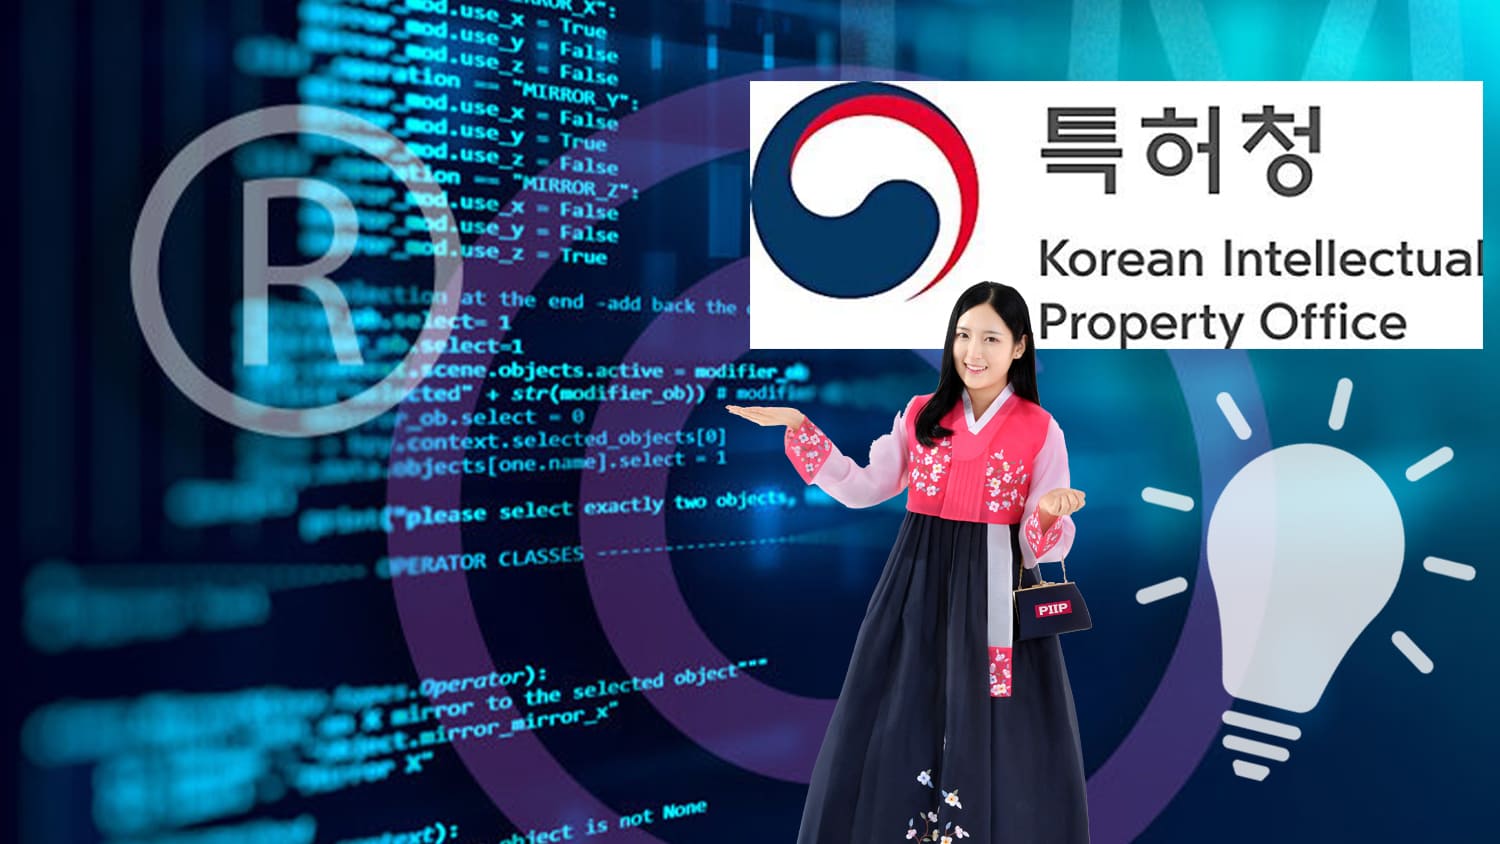 韩国商标：与「软体」相关的商品及服务必须要注明「用途」